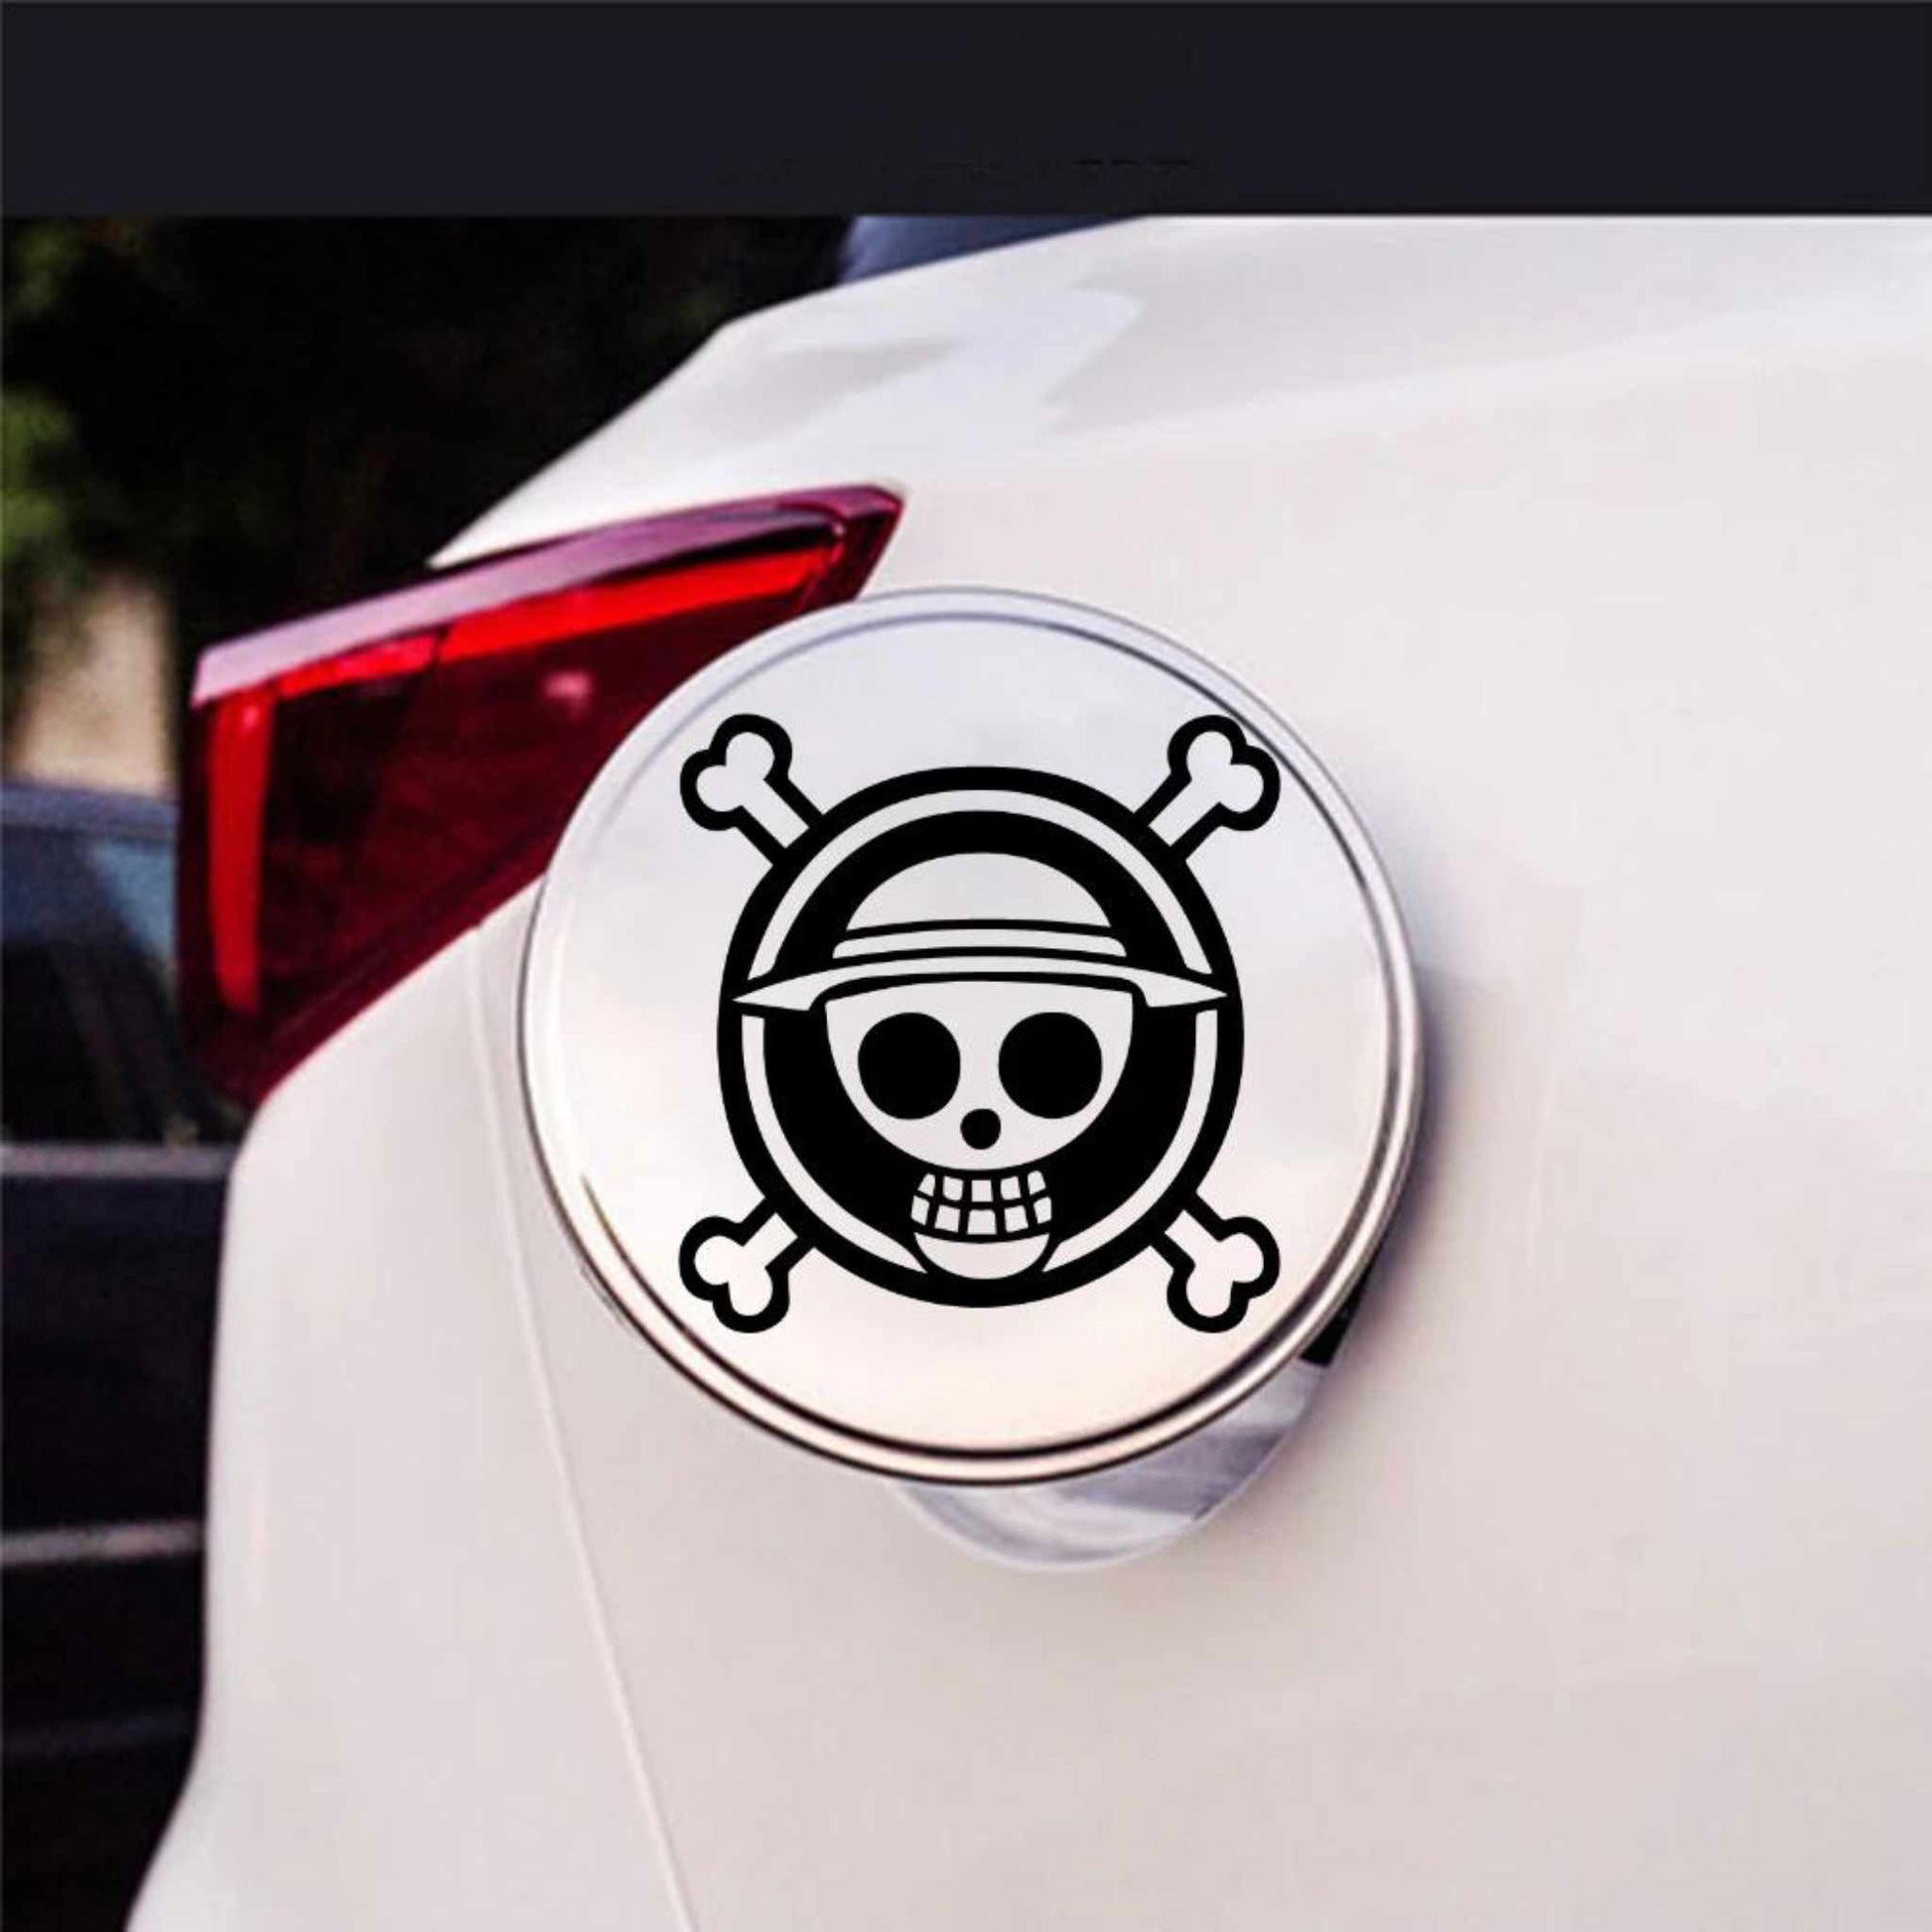 Sticker rezervor auto, personalizat cu model "Cracniu", din  autocolant Oracal de cea mai buna calitate, negru.